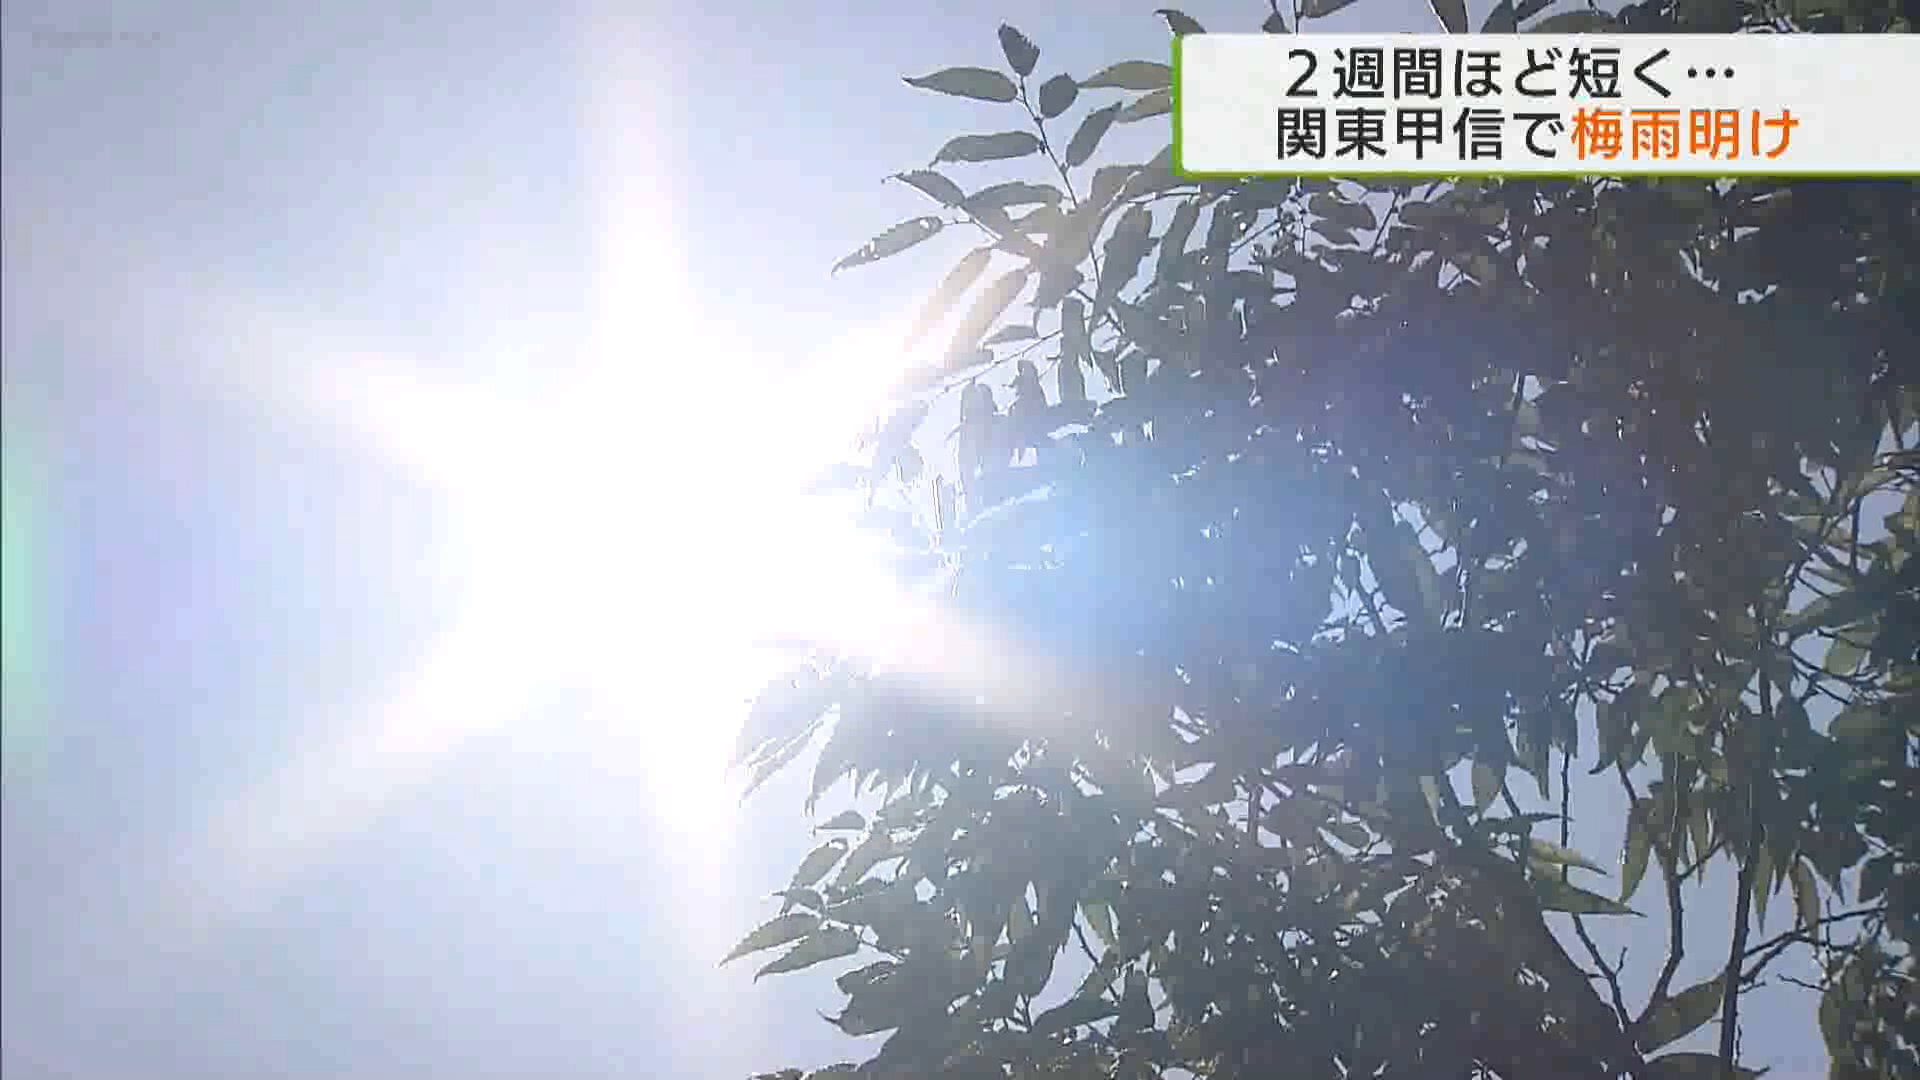 7月18日関東甲信などで梅雨明けしたとみられると気象庁が発表しました。梅雨明けした7月18日の都内は各地で猛暑日に迫る、熱中症への対策が必要な暑さとなりました。